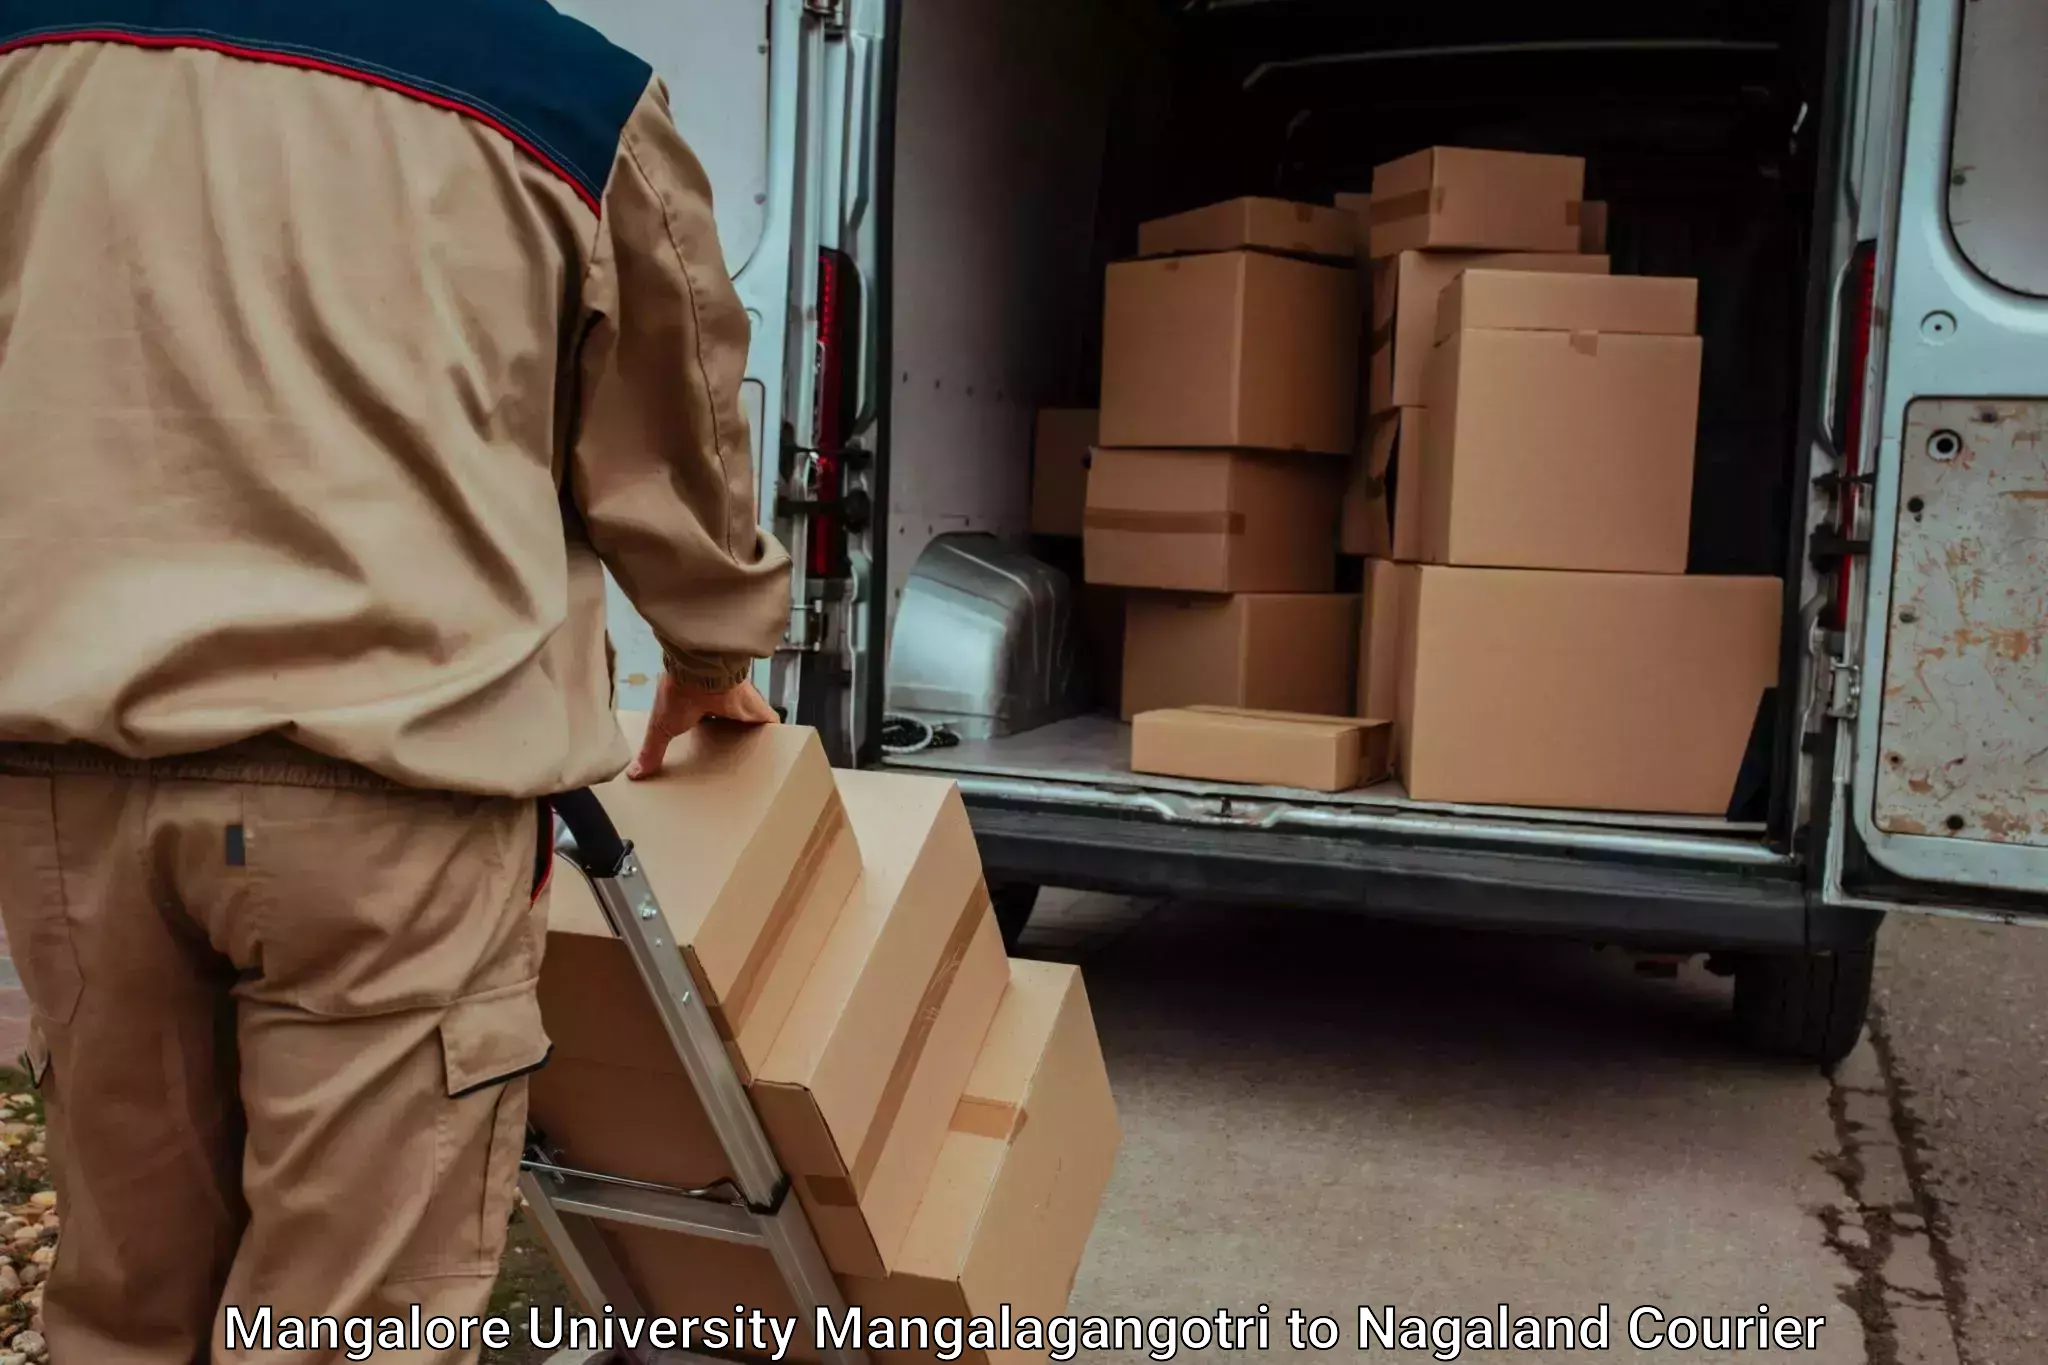 Residential moving experts Mangalore University Mangalagangotri to Nagaland